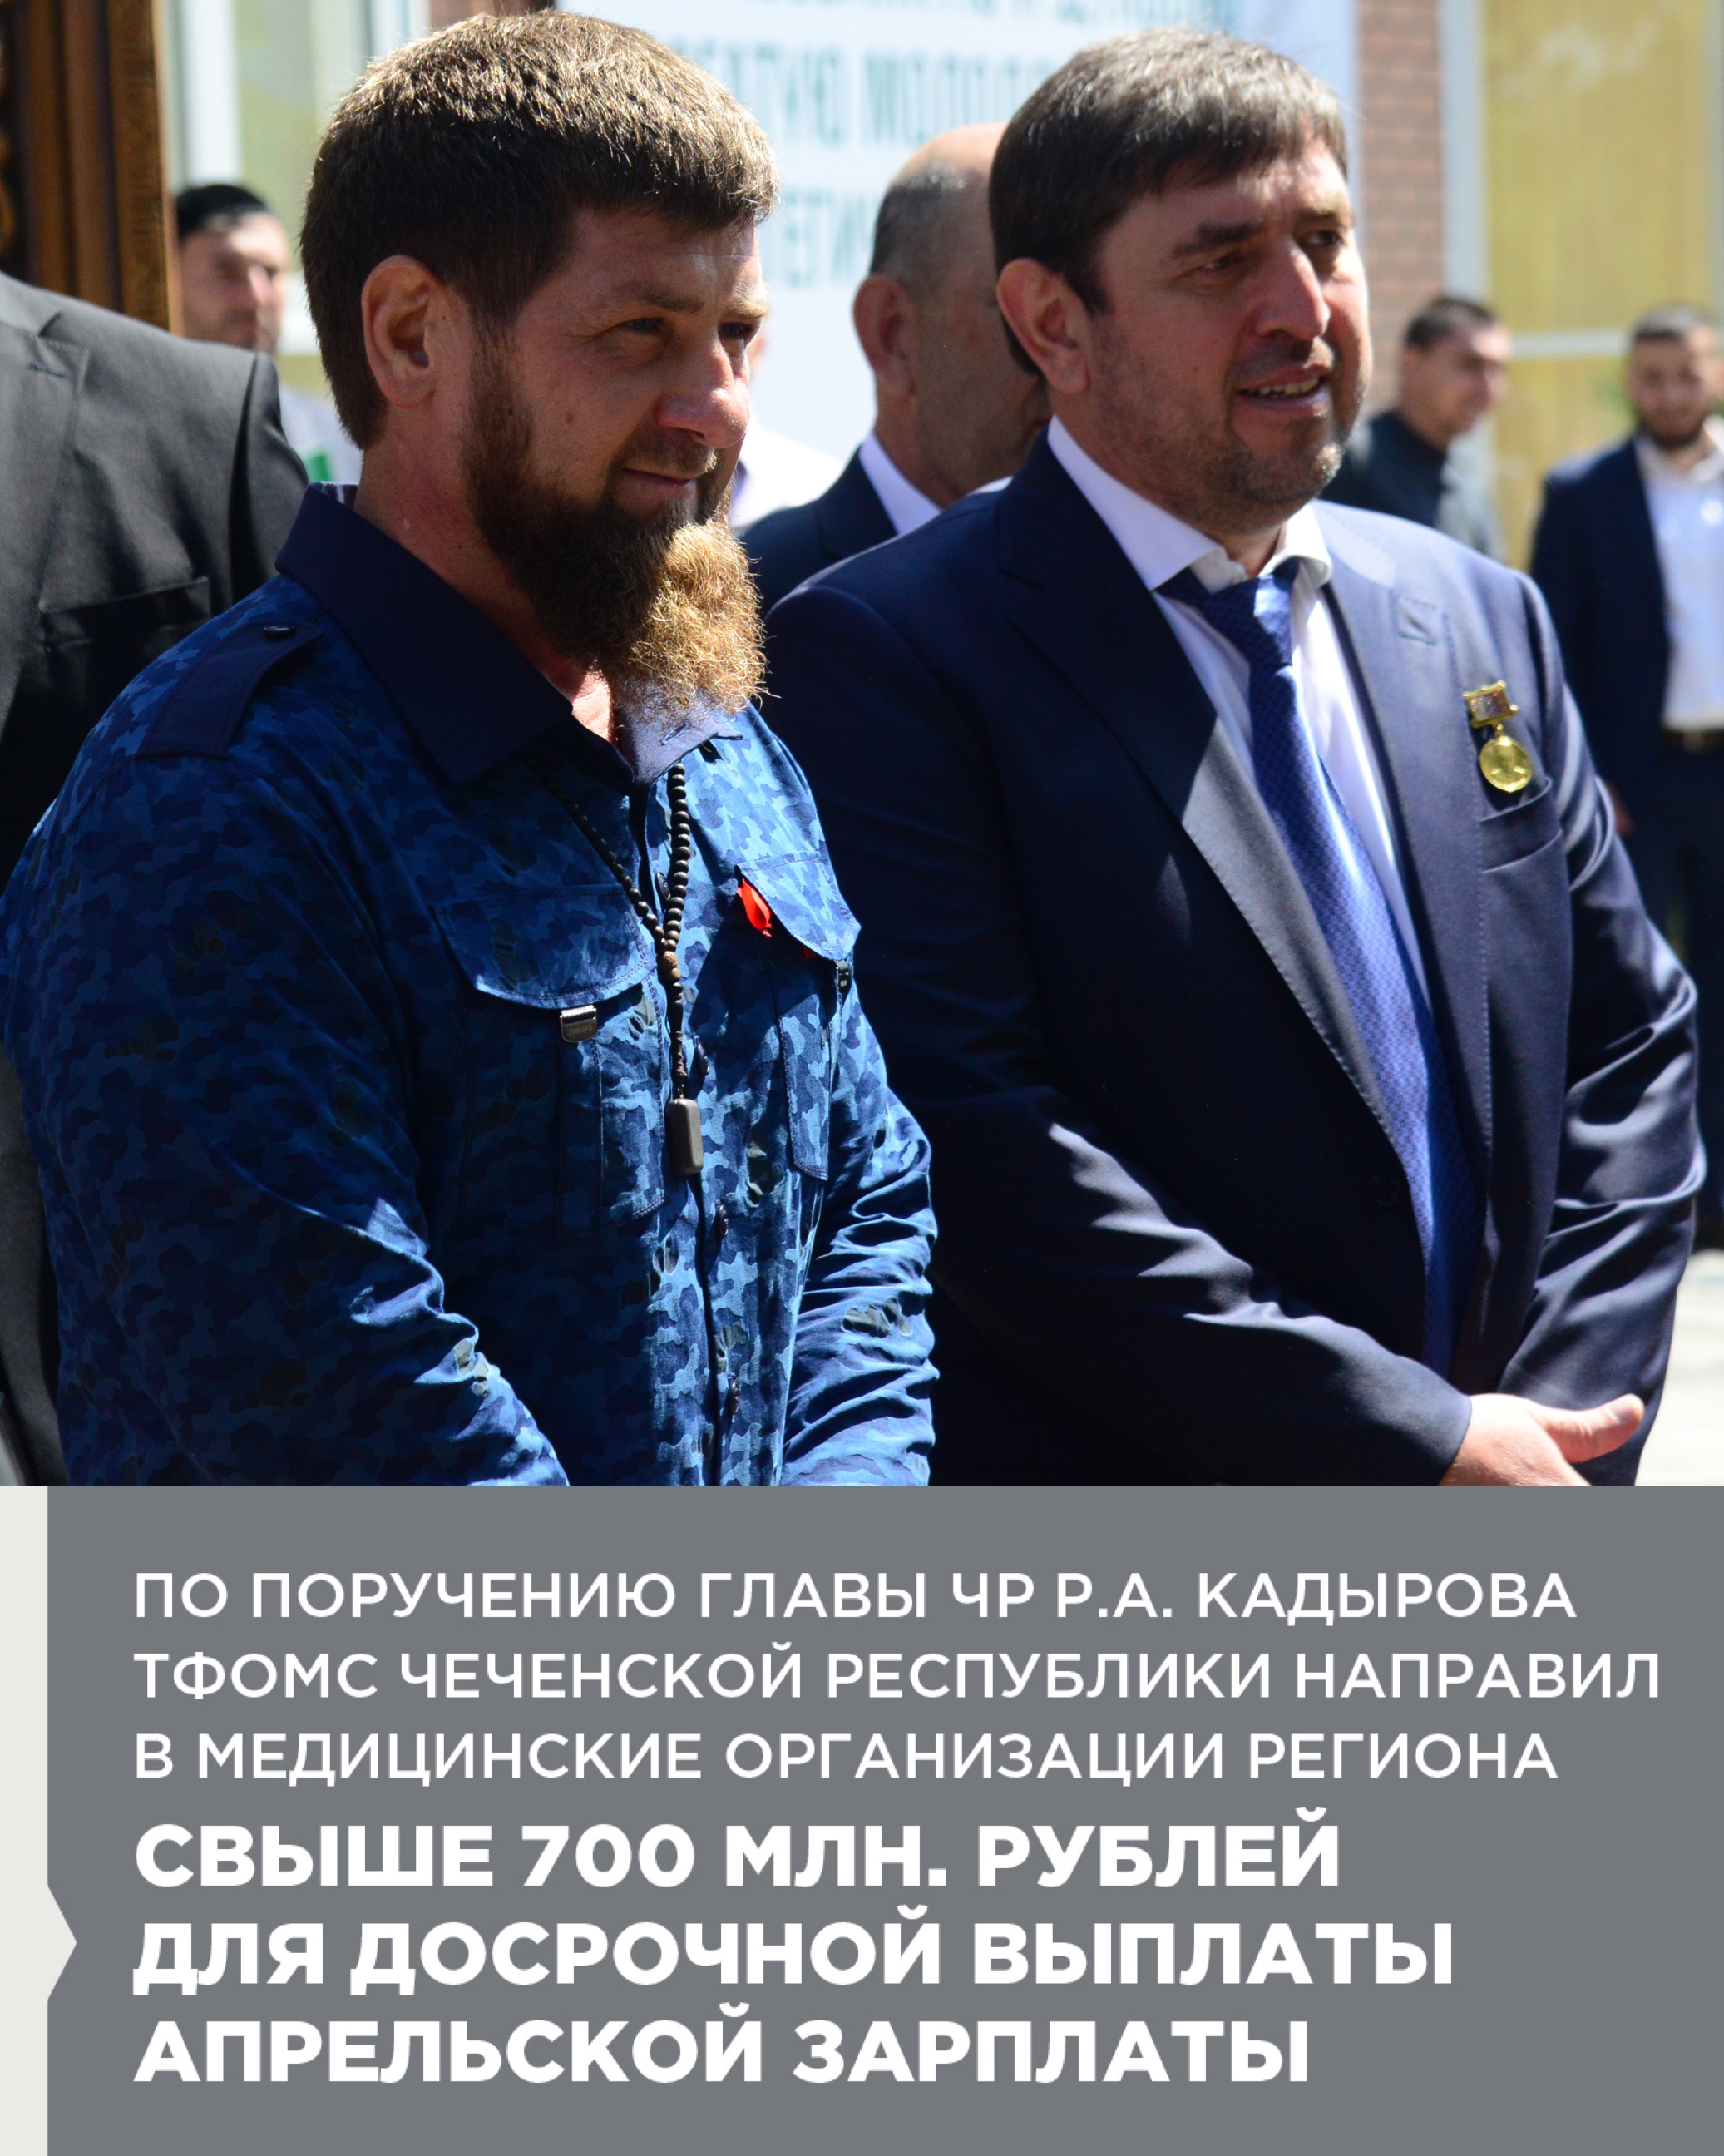 По поручению Главы ЧР Р.А. Кадырова ТФОМС Чеченской Республики направил в медицинские организации региона свыше 700 млн. рублей для досрочной выплаты апрельской зарплаты